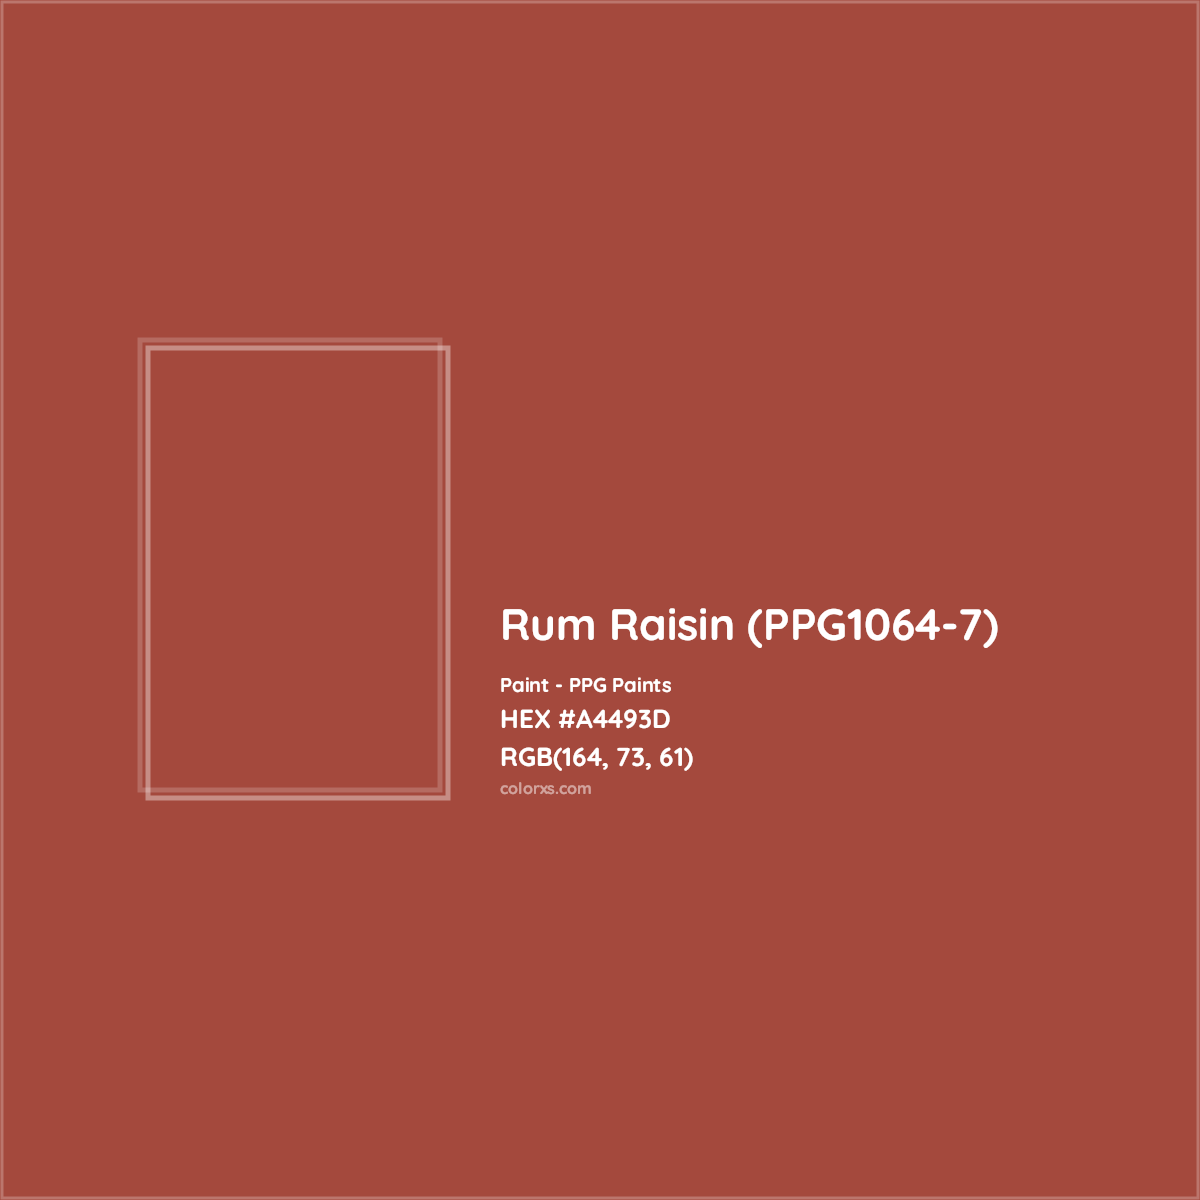 HEX #A4493D Rum Raisin (PPG1064-7) Paint PPG Paints - Color Code